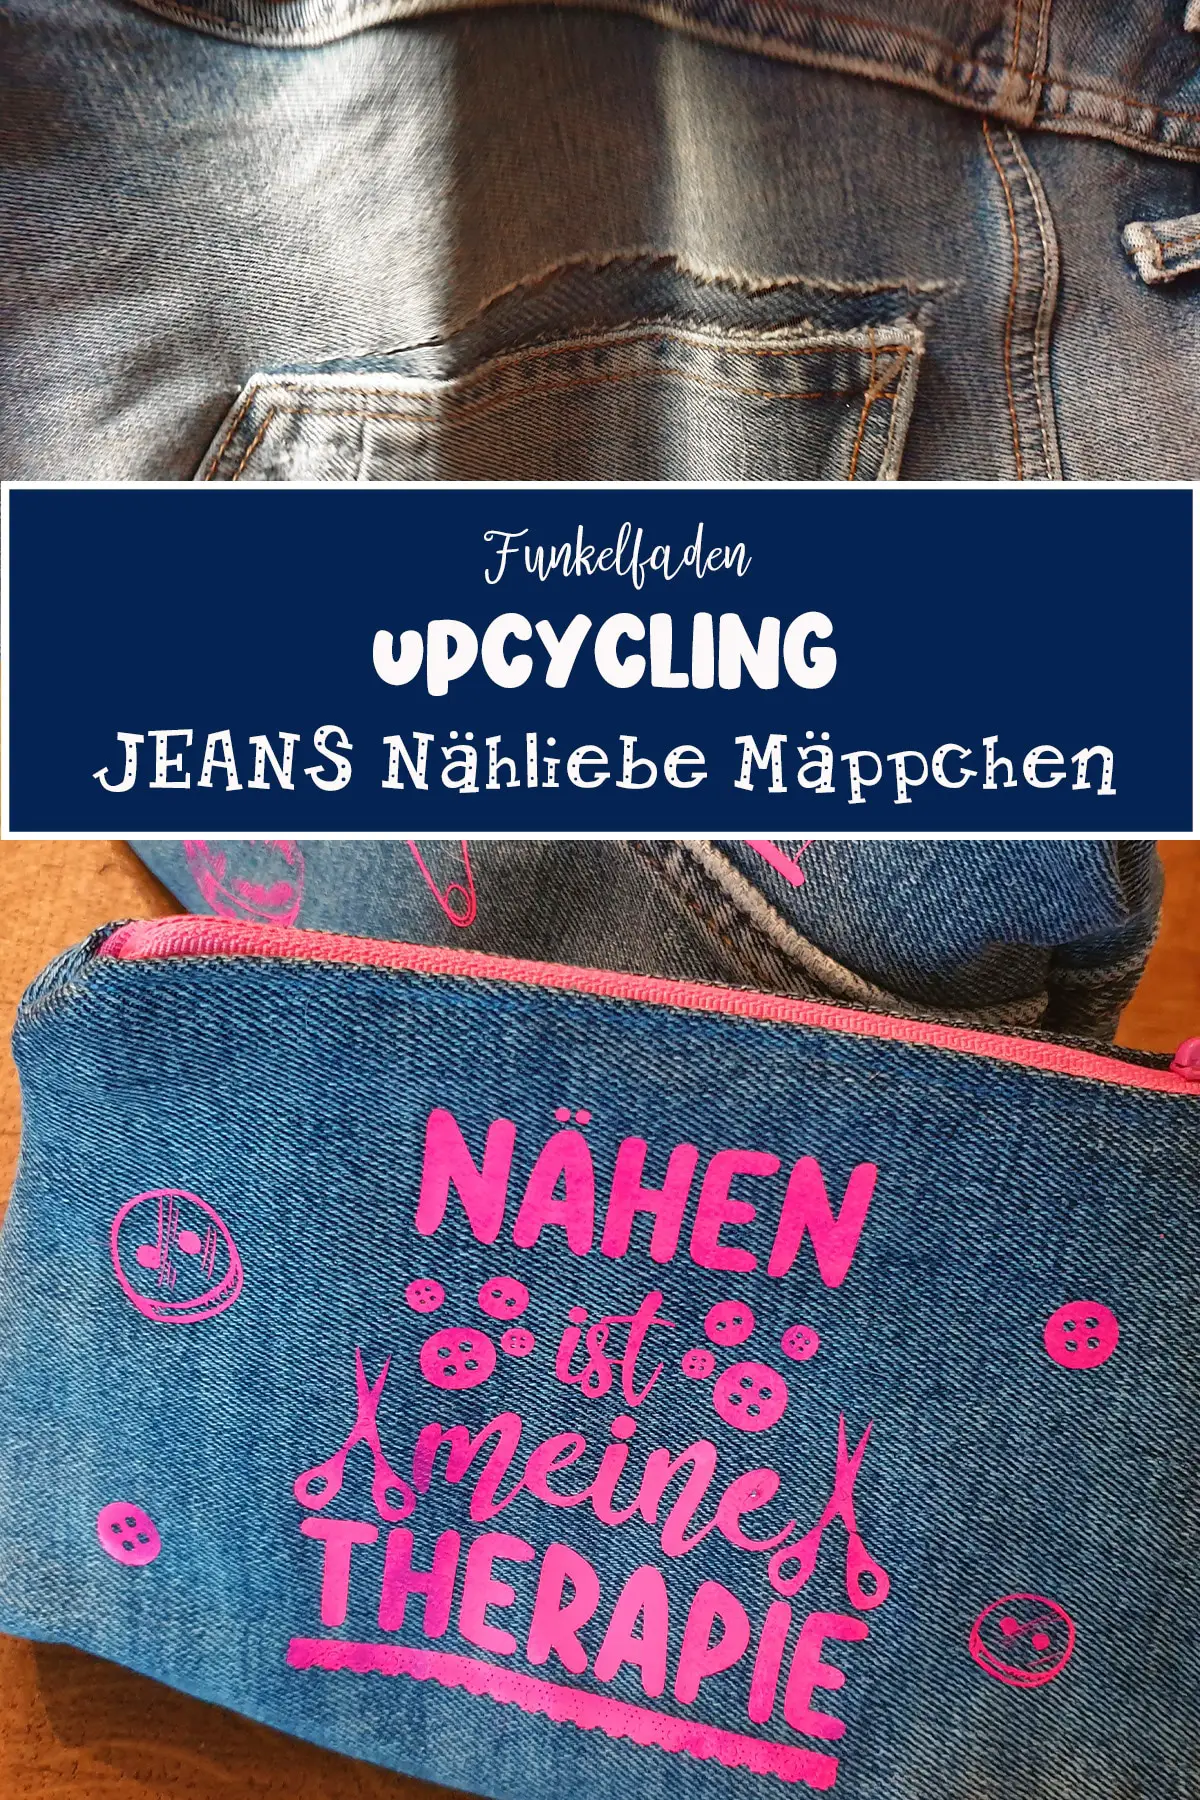 Jeans Upcycling Idee mit Nähliebe-Plottermotiv